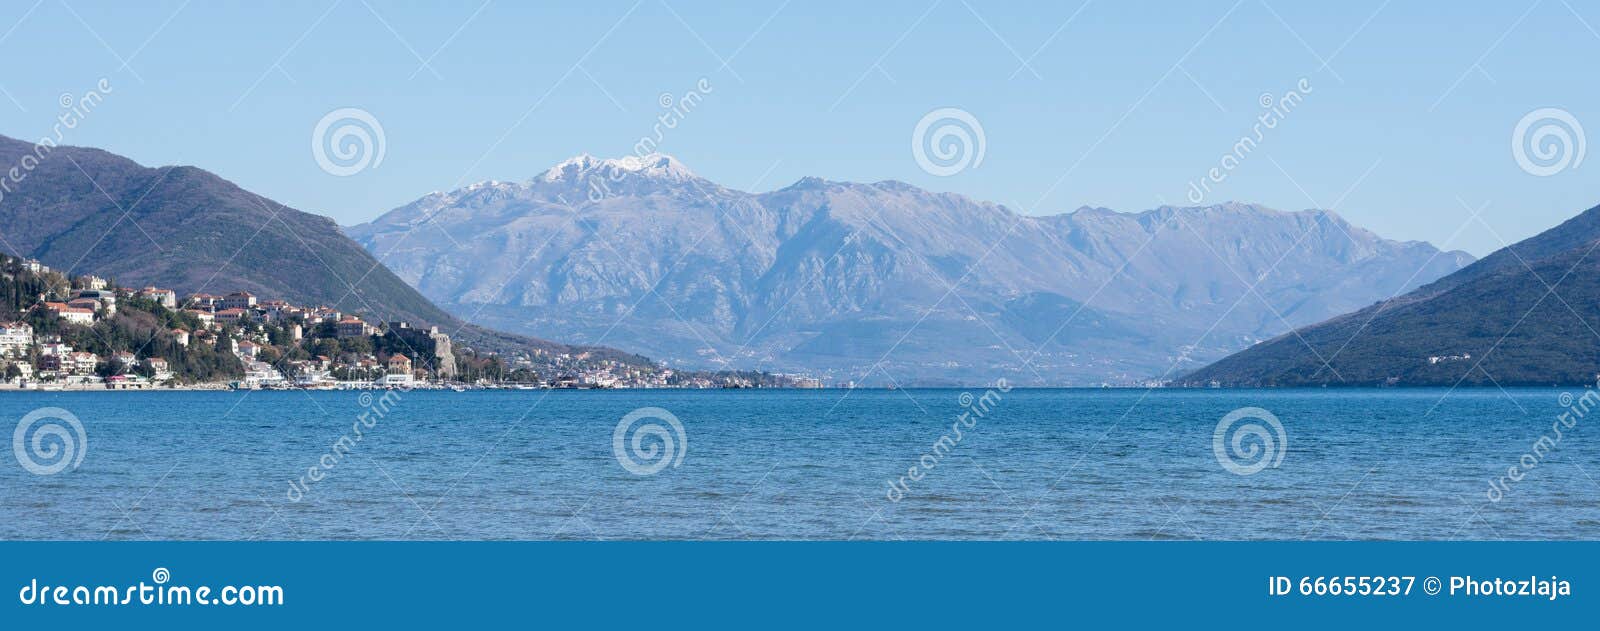 Panorama der adriatisches Seeinseln